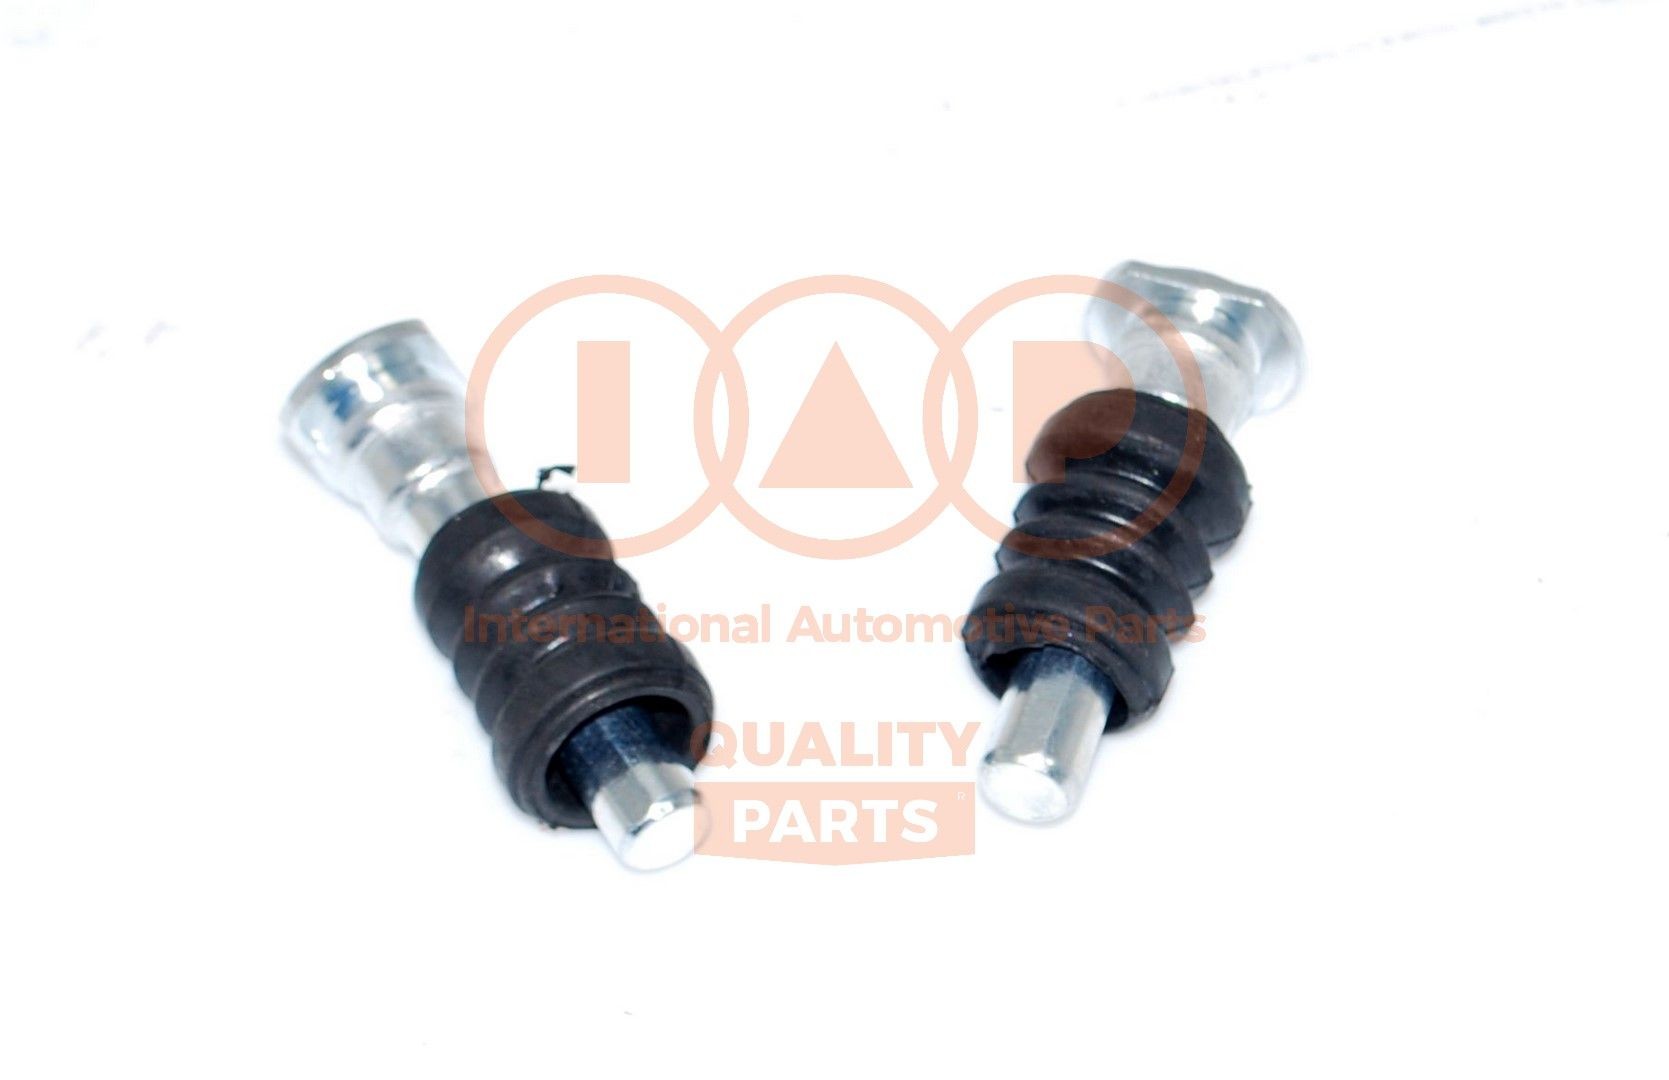 IAP QUALITY PARTS Front Axle Brake Caliper Repair Kit 706-25010 buy